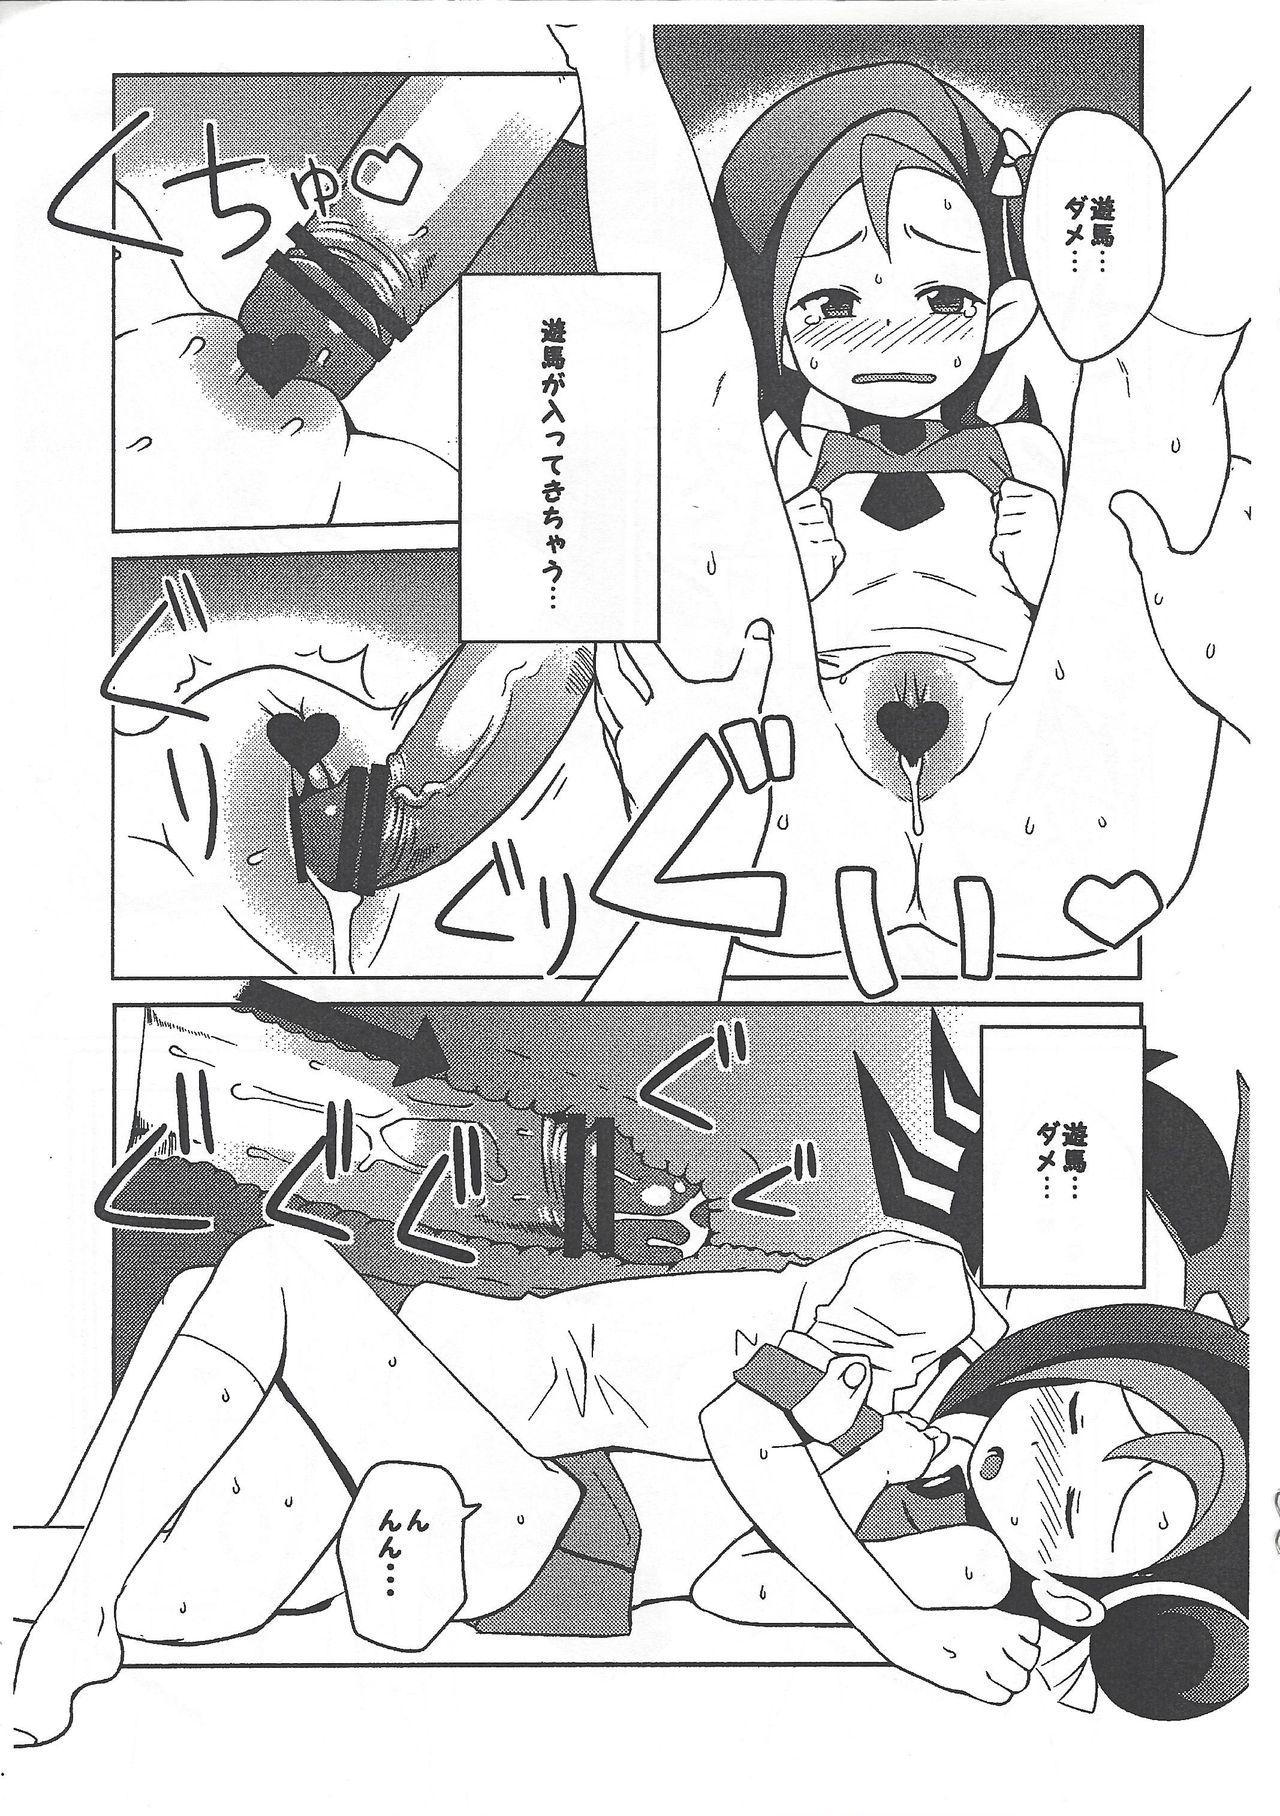 Doctor Sex (Puniket 23) [Funi Funi Lab (Tamagoro)] Yu-Gi-Oh ZEXAL Kotori-chan Book (Tentative) (Yu-Gi-Oh! ZEXAL) - Yu gi oh zexal Home - Page 9